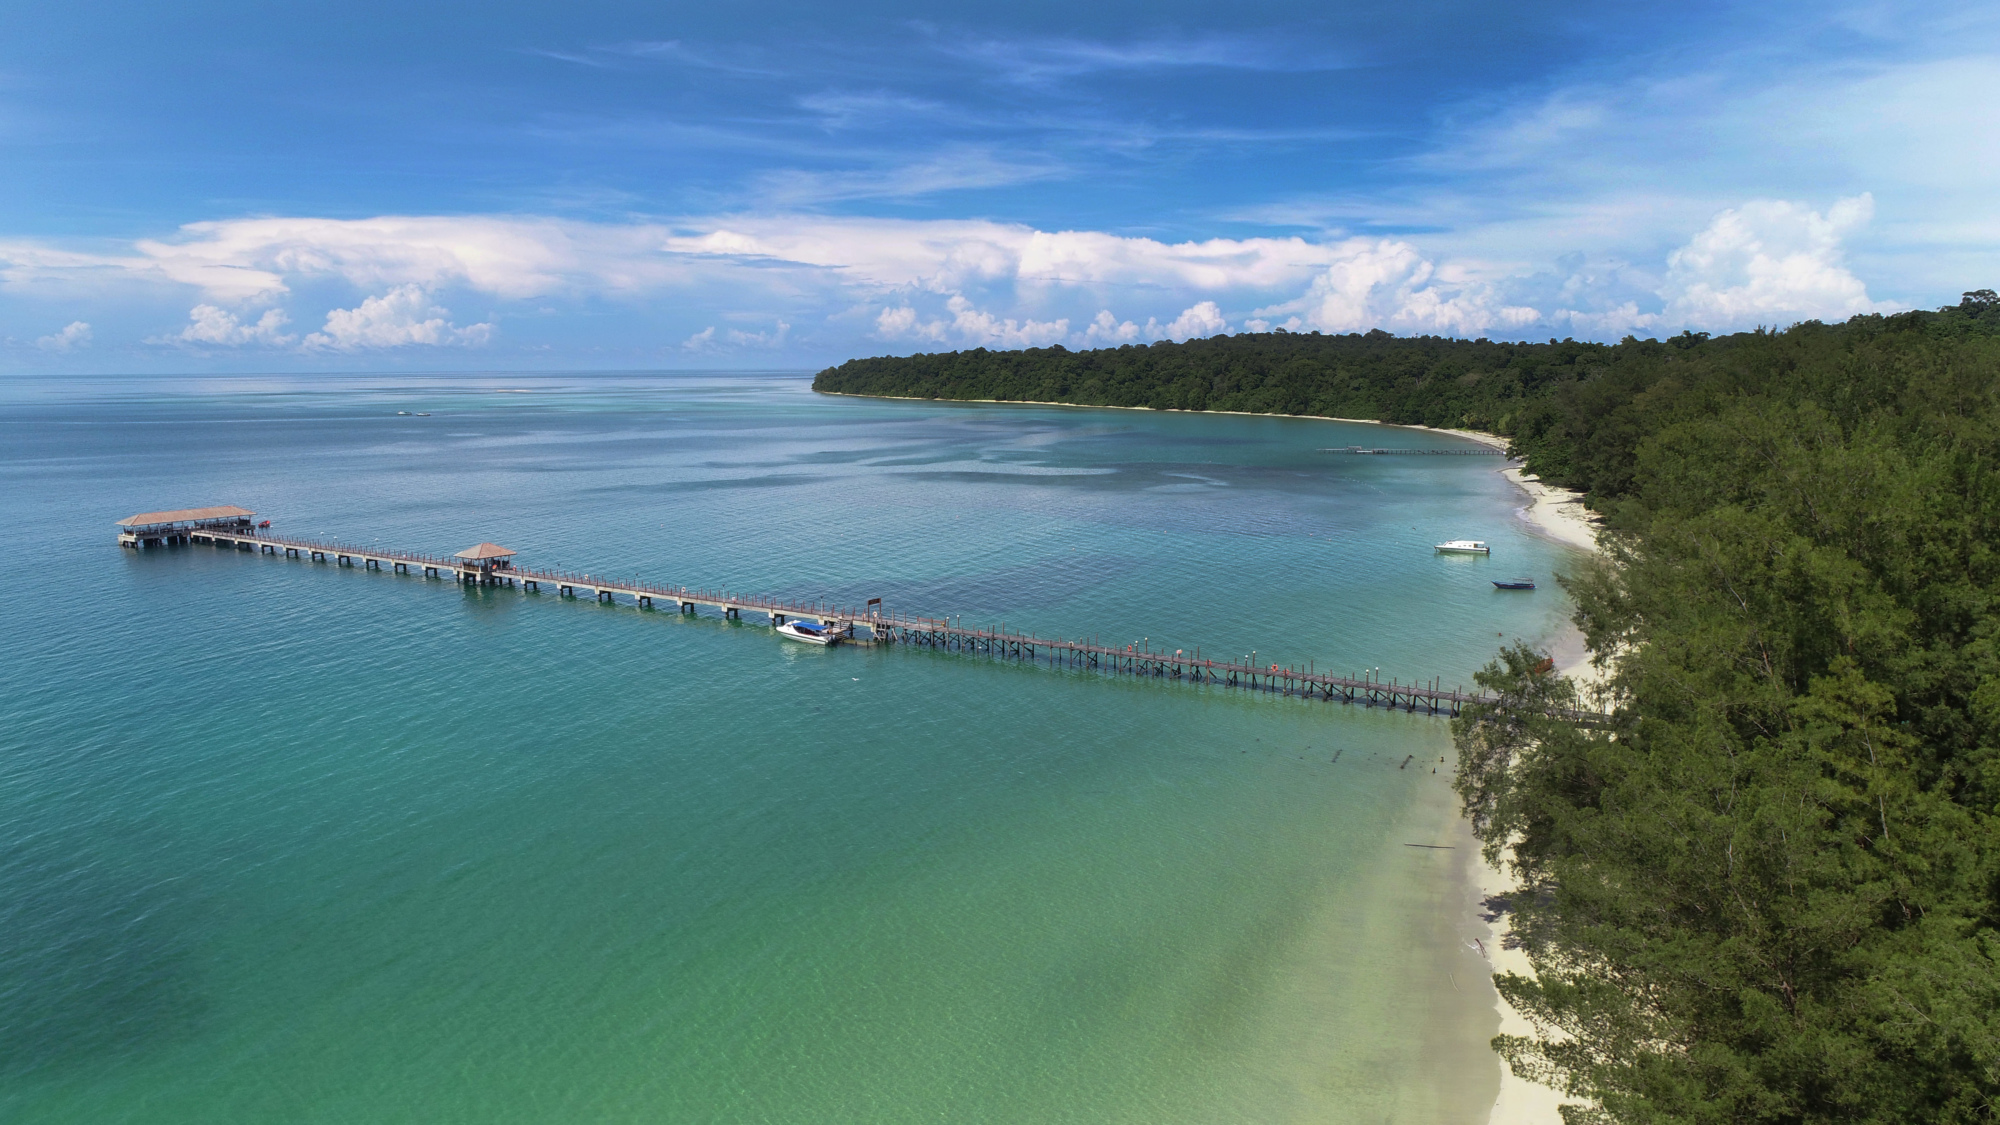 Coastline of Pulau Tiga, a hidden tourist attraction in Sabah